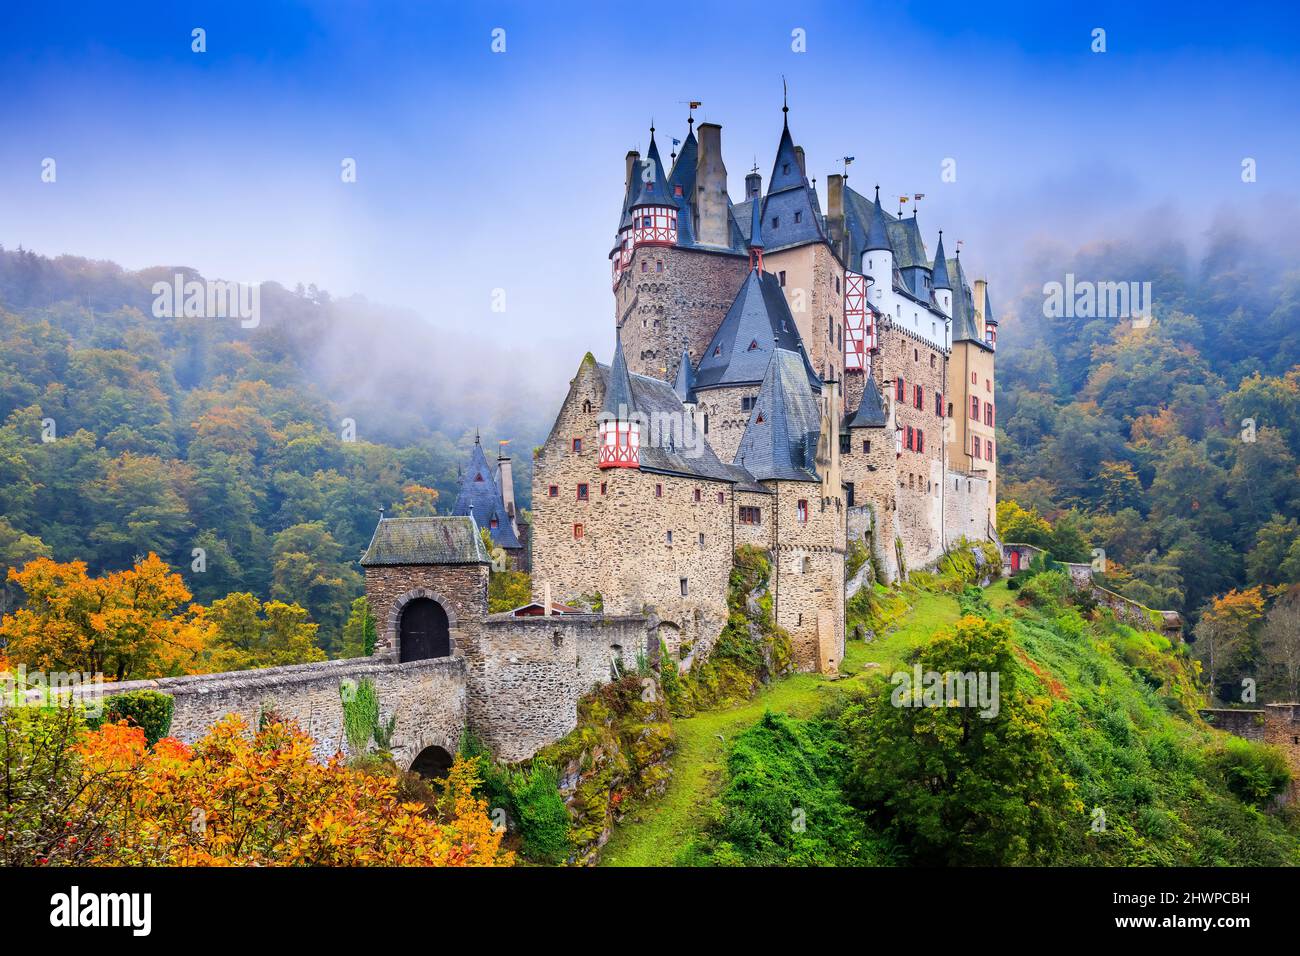 Castello Eltz o Burg Eltz. Castello medievale sulle colline sopra il fiume Moselle. Renania Palatinato in Germania. Foto Stock